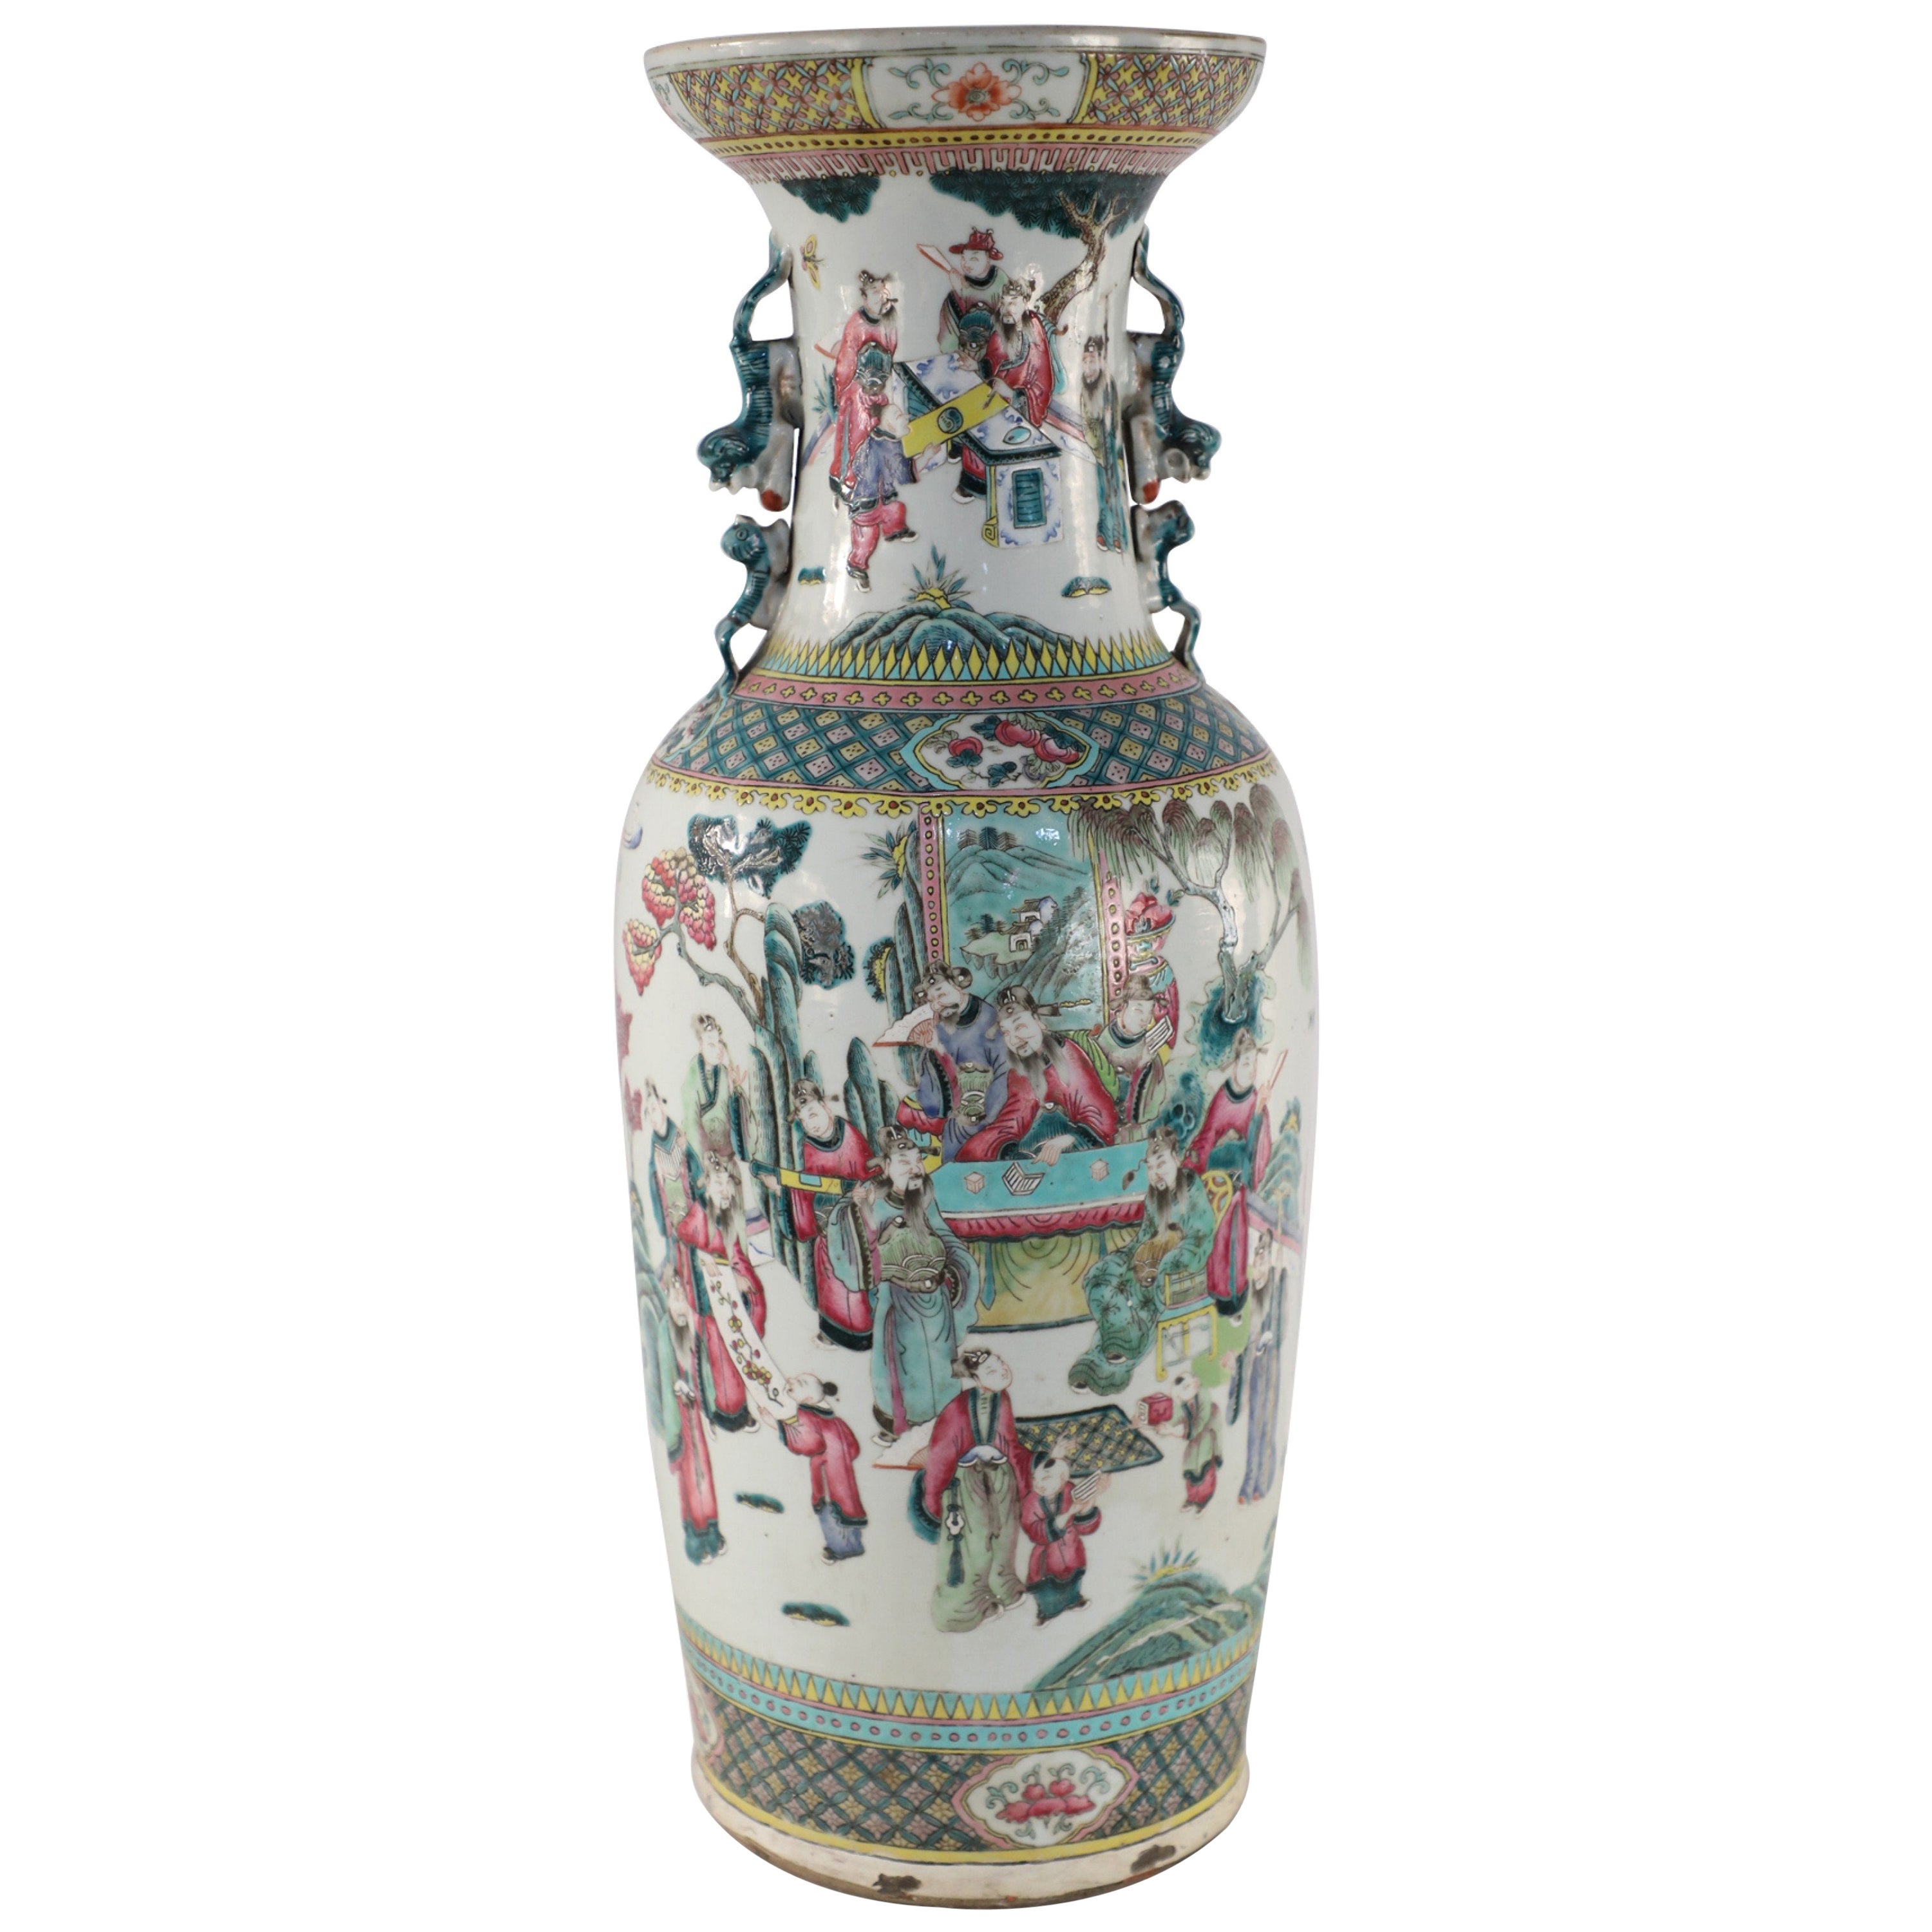 Urne chinoise en porcelaine blanche et figurative représentant une scène pastorale